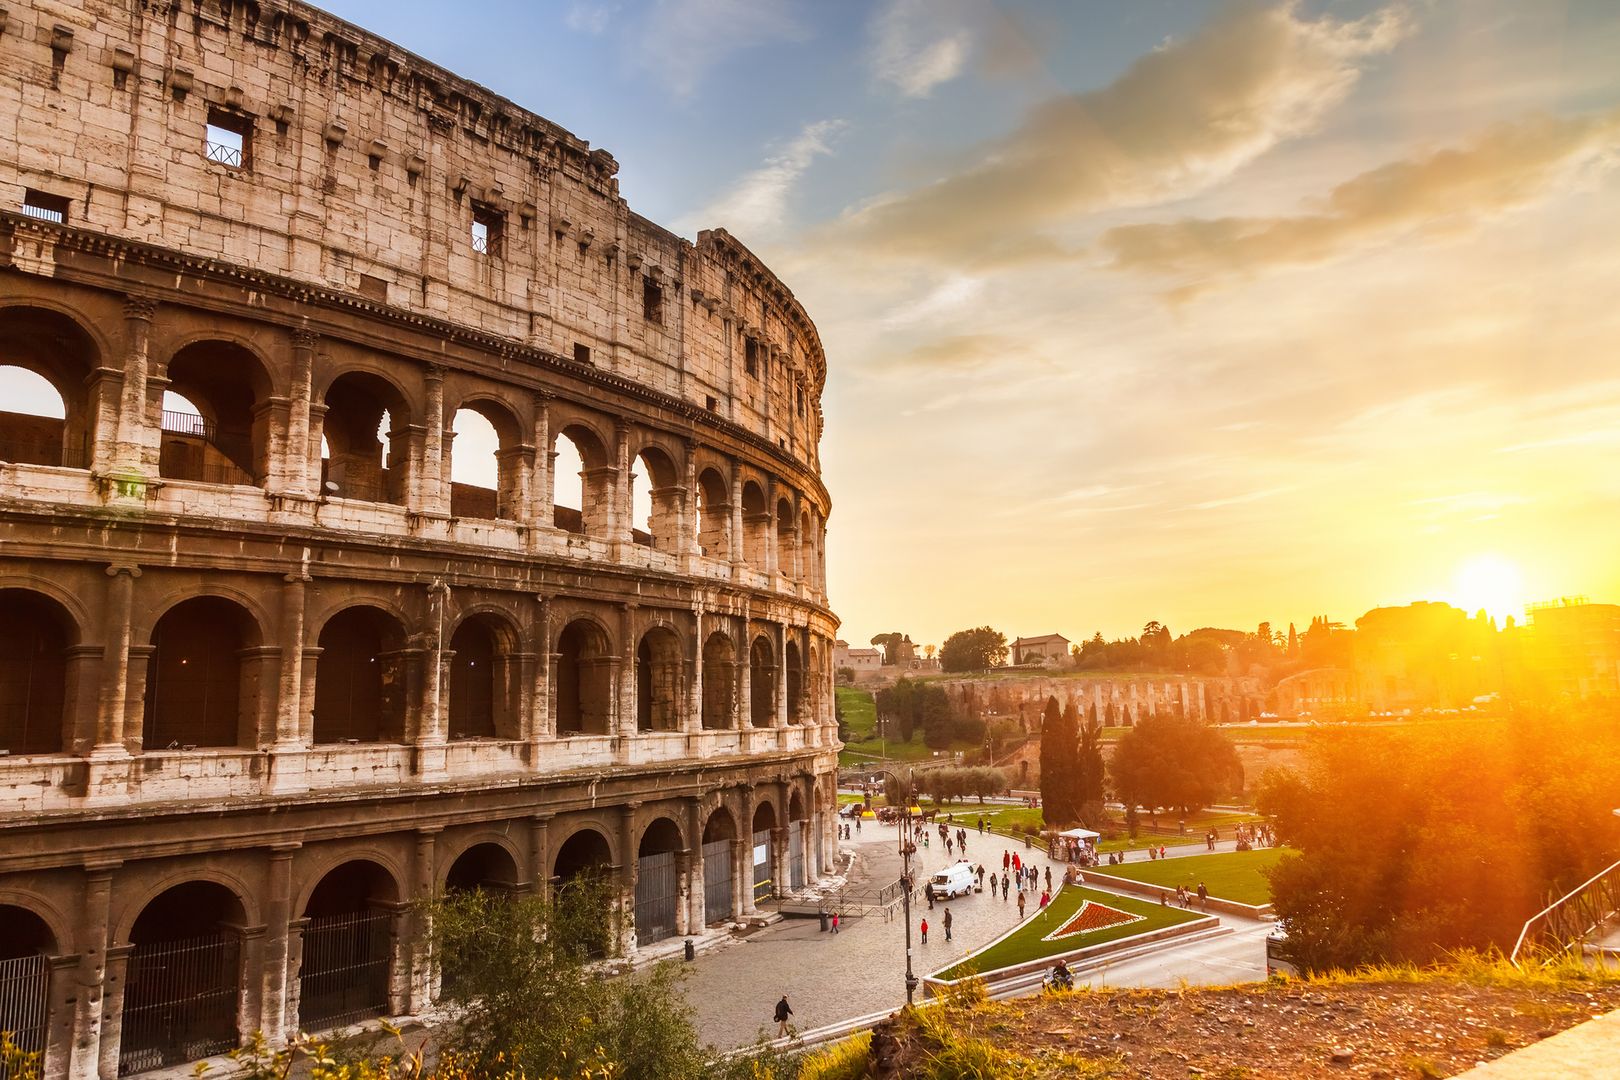 Wybierasz się do Rzymu? Przygotuj się na problemy z wodą